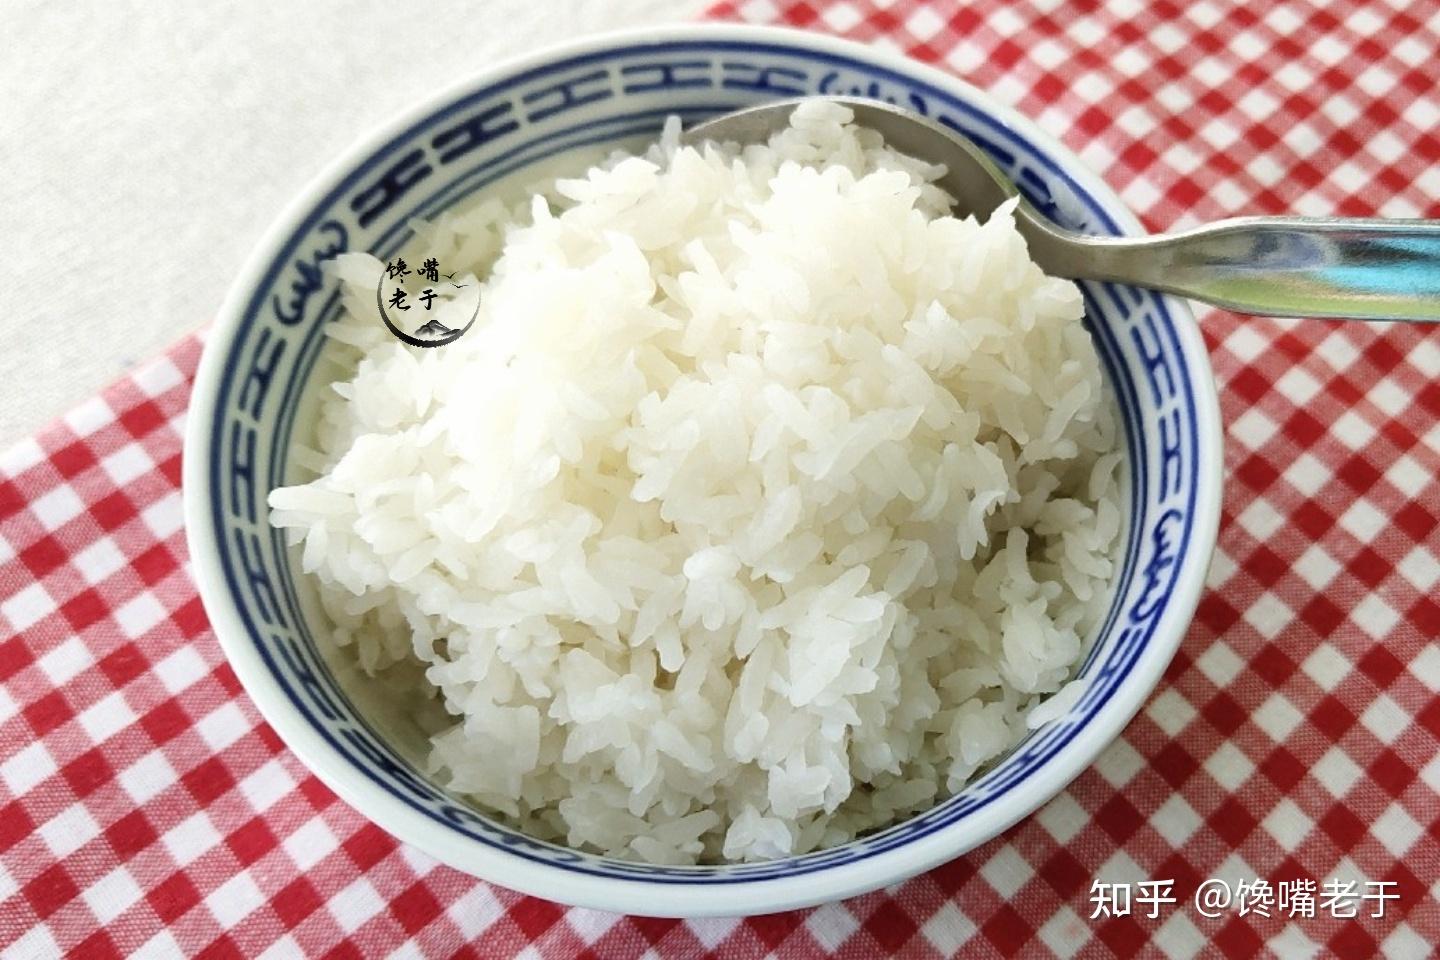 蒸米饭需要放多少水 焖大米饭水的比例是多少 - 汽车时代网